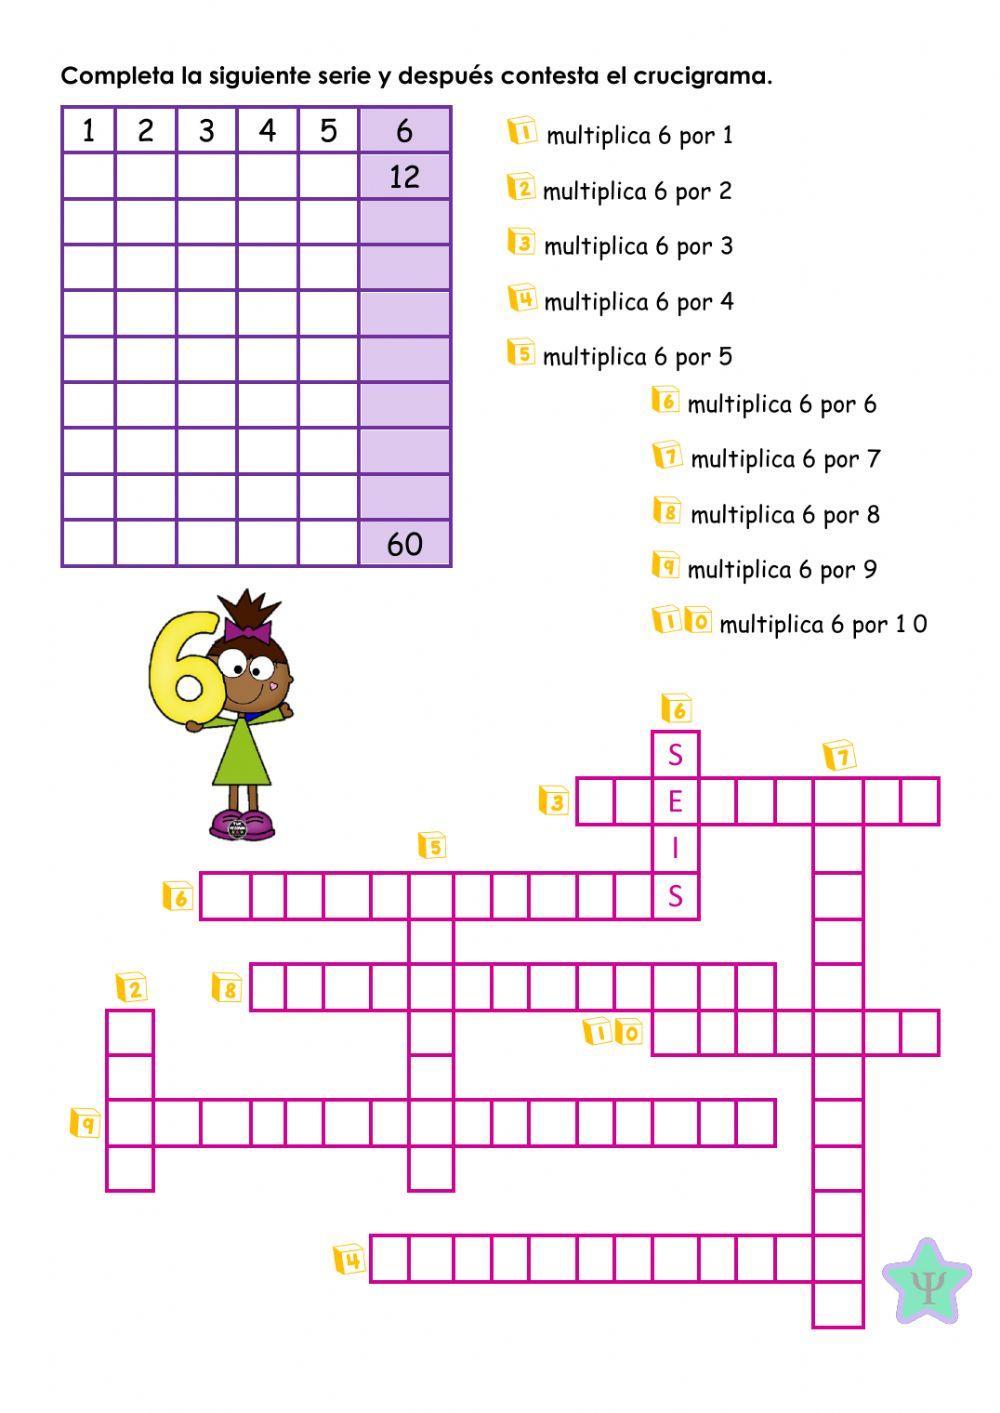 Crucigrama tablas de multiplicar 5,6 y 7